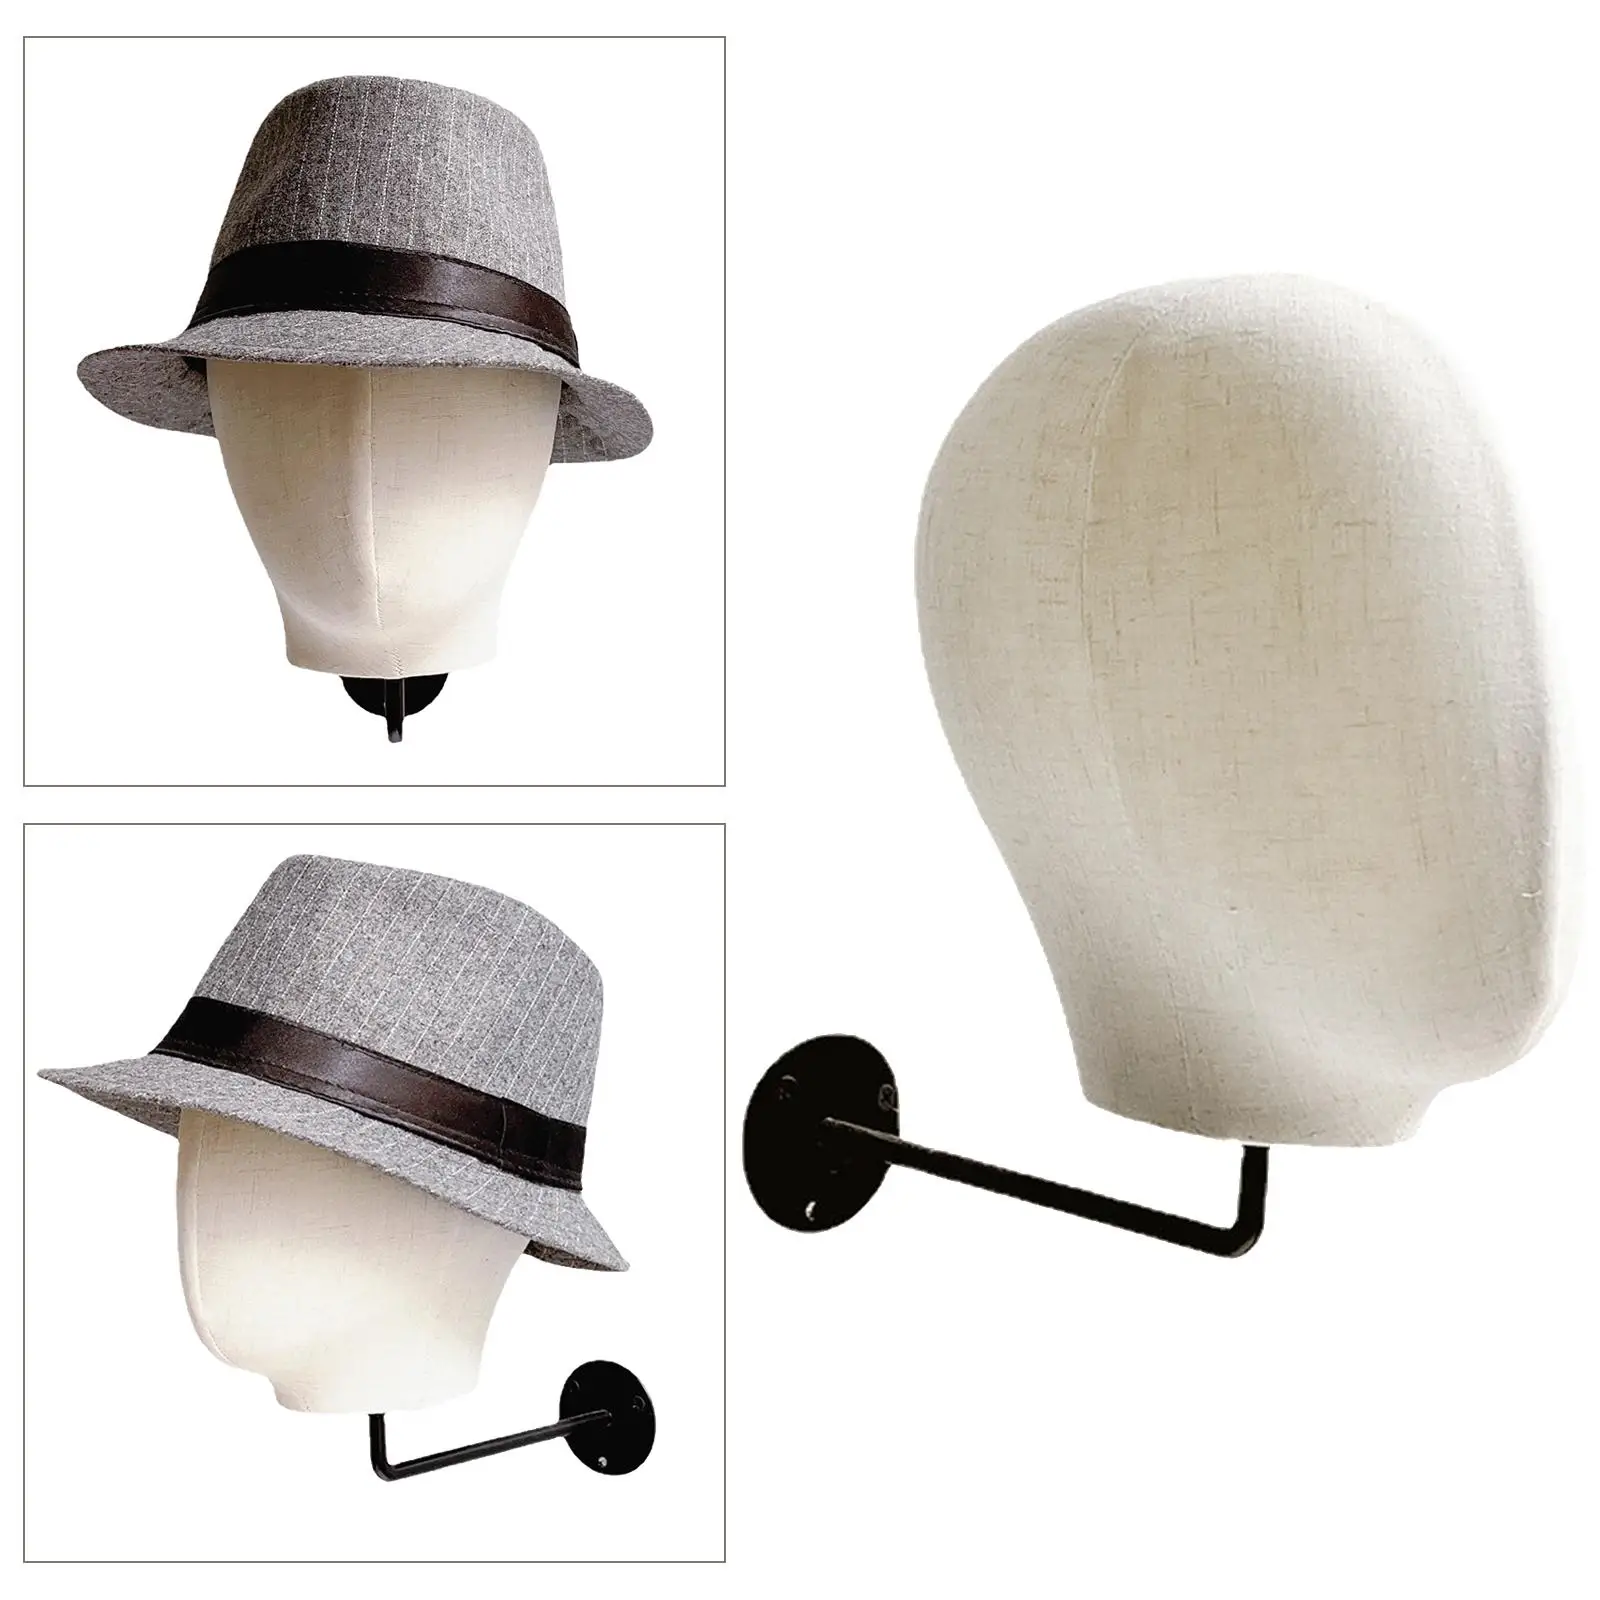  Mounted Manikin head 54cm Hat Display Storage Holder